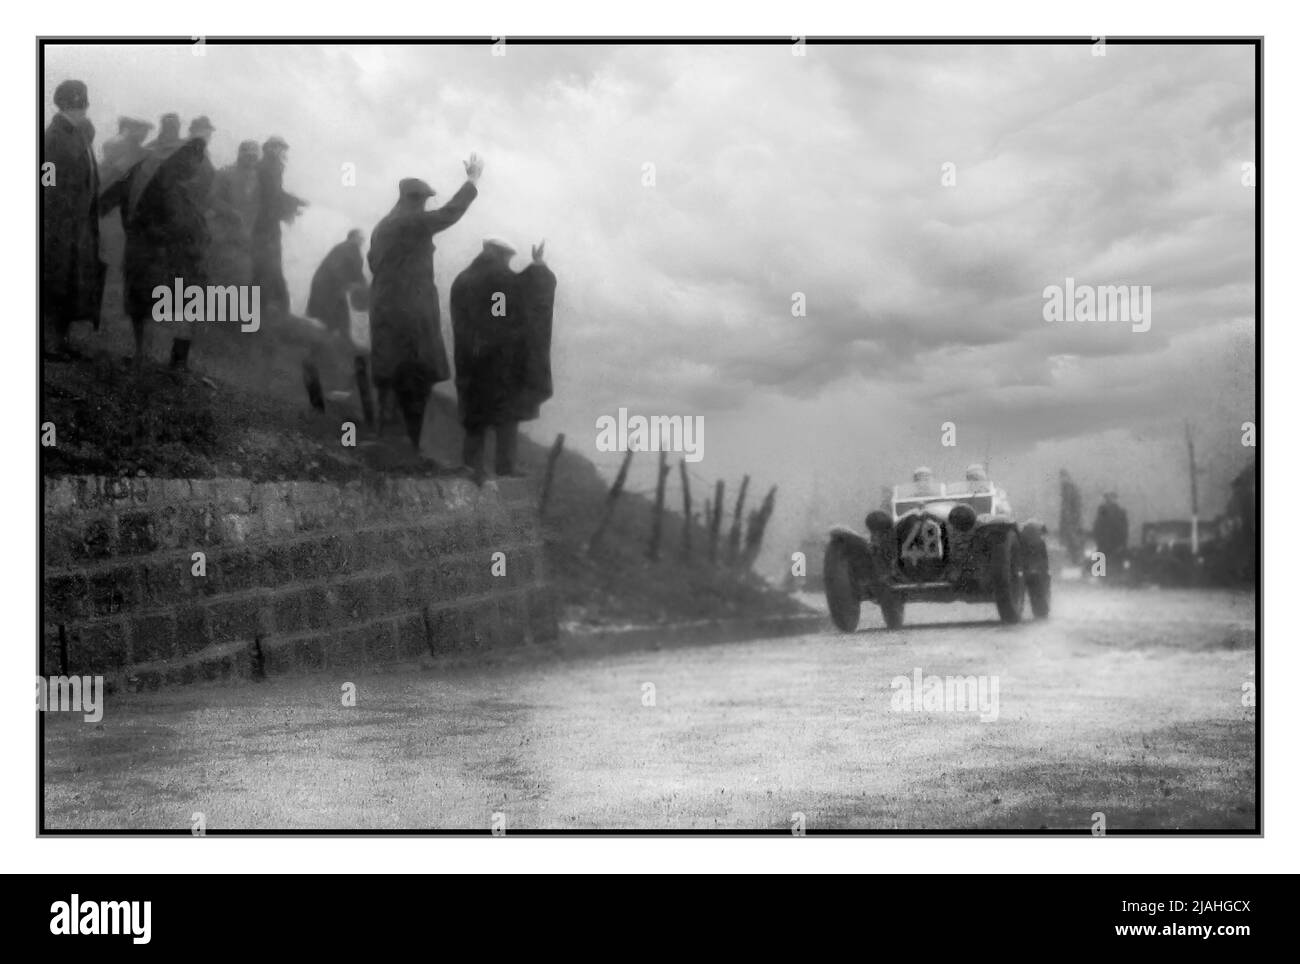 MILLE MIGLIA 1934out von Regen und Düsternis das Siegerauto der Alfa Romeo 8c 2600 Nummer 28 die Gewinner der Mille Miglia am 08. April 1934 waren Achille Varzi und Amedeo Bignami, die diesen Alfa Romeo 8C 2600 von Brianza fuhren (Eintrag #48). Datum: 8. April 1934 Stockfoto